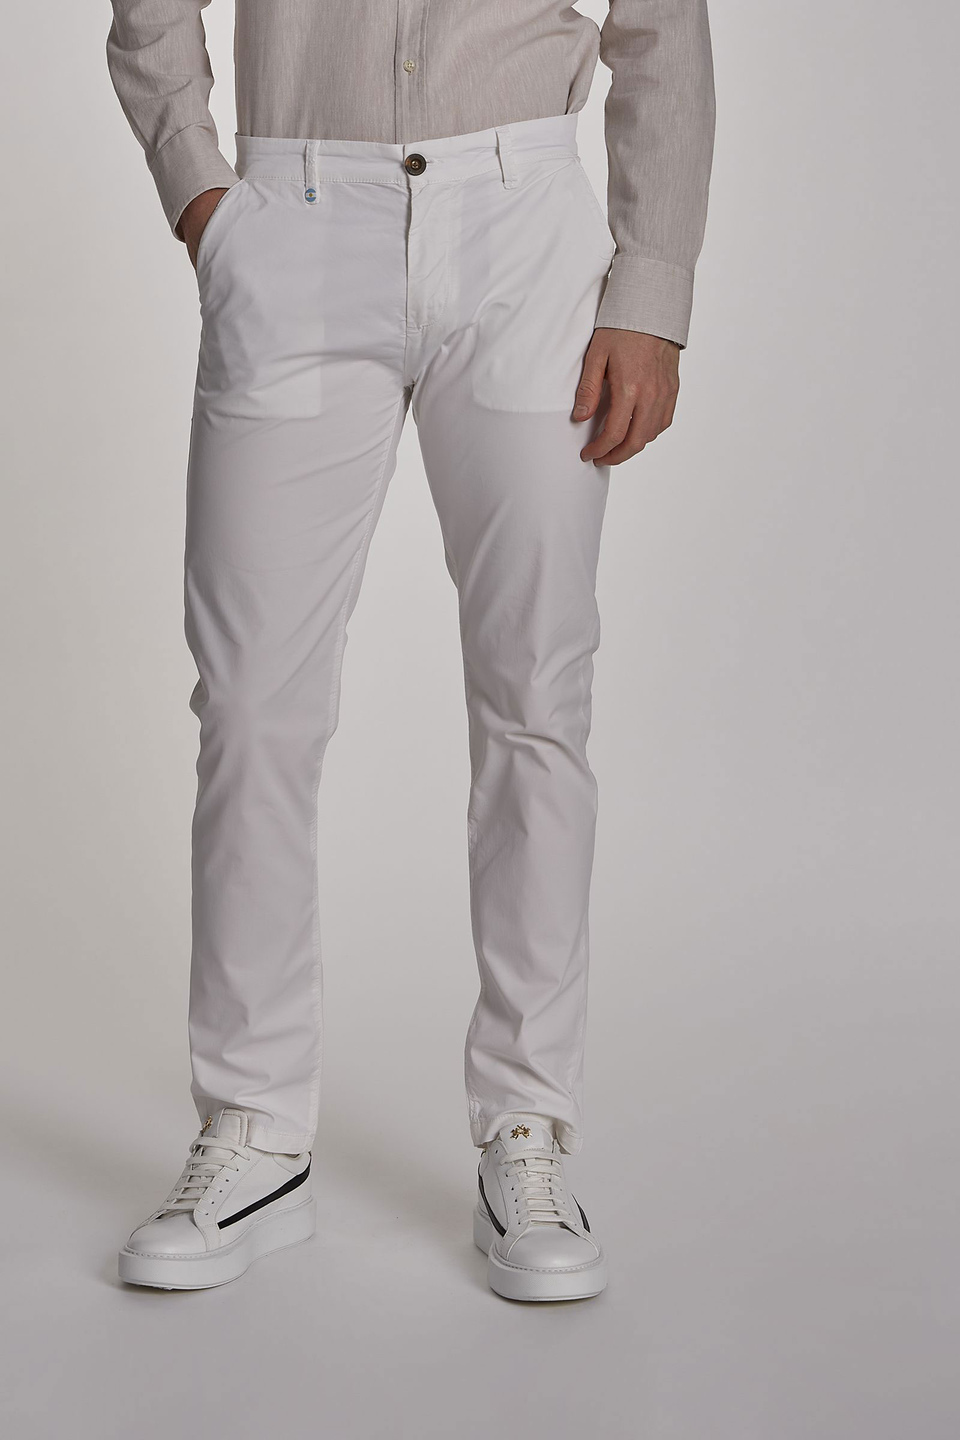 Relatief Beangstigend Jurassic Park Men's slim-fit stretch cotton chinos Optic White La Martina | Shop Online